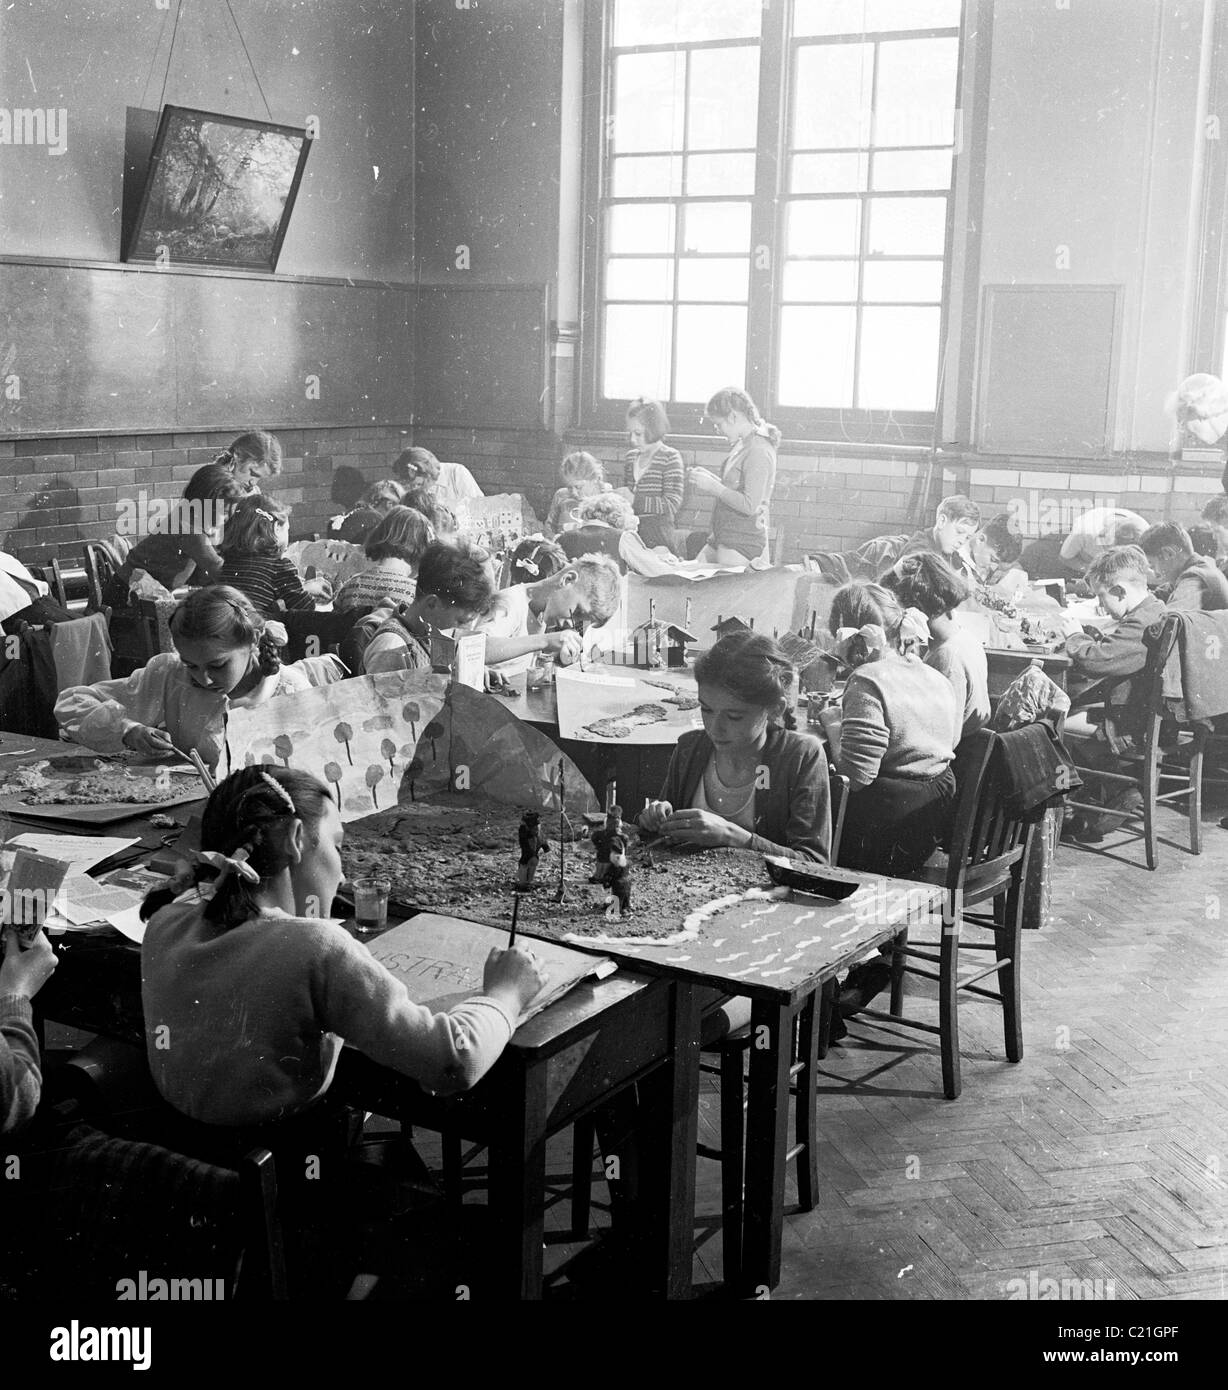 1950s, bambini storici della scuola primaria seduti alle scrivanie in classe che svolgono attività; disegnare, dipingere e realizzare modelli di carta, Inghilterra, Regno Unito. Foto Stock